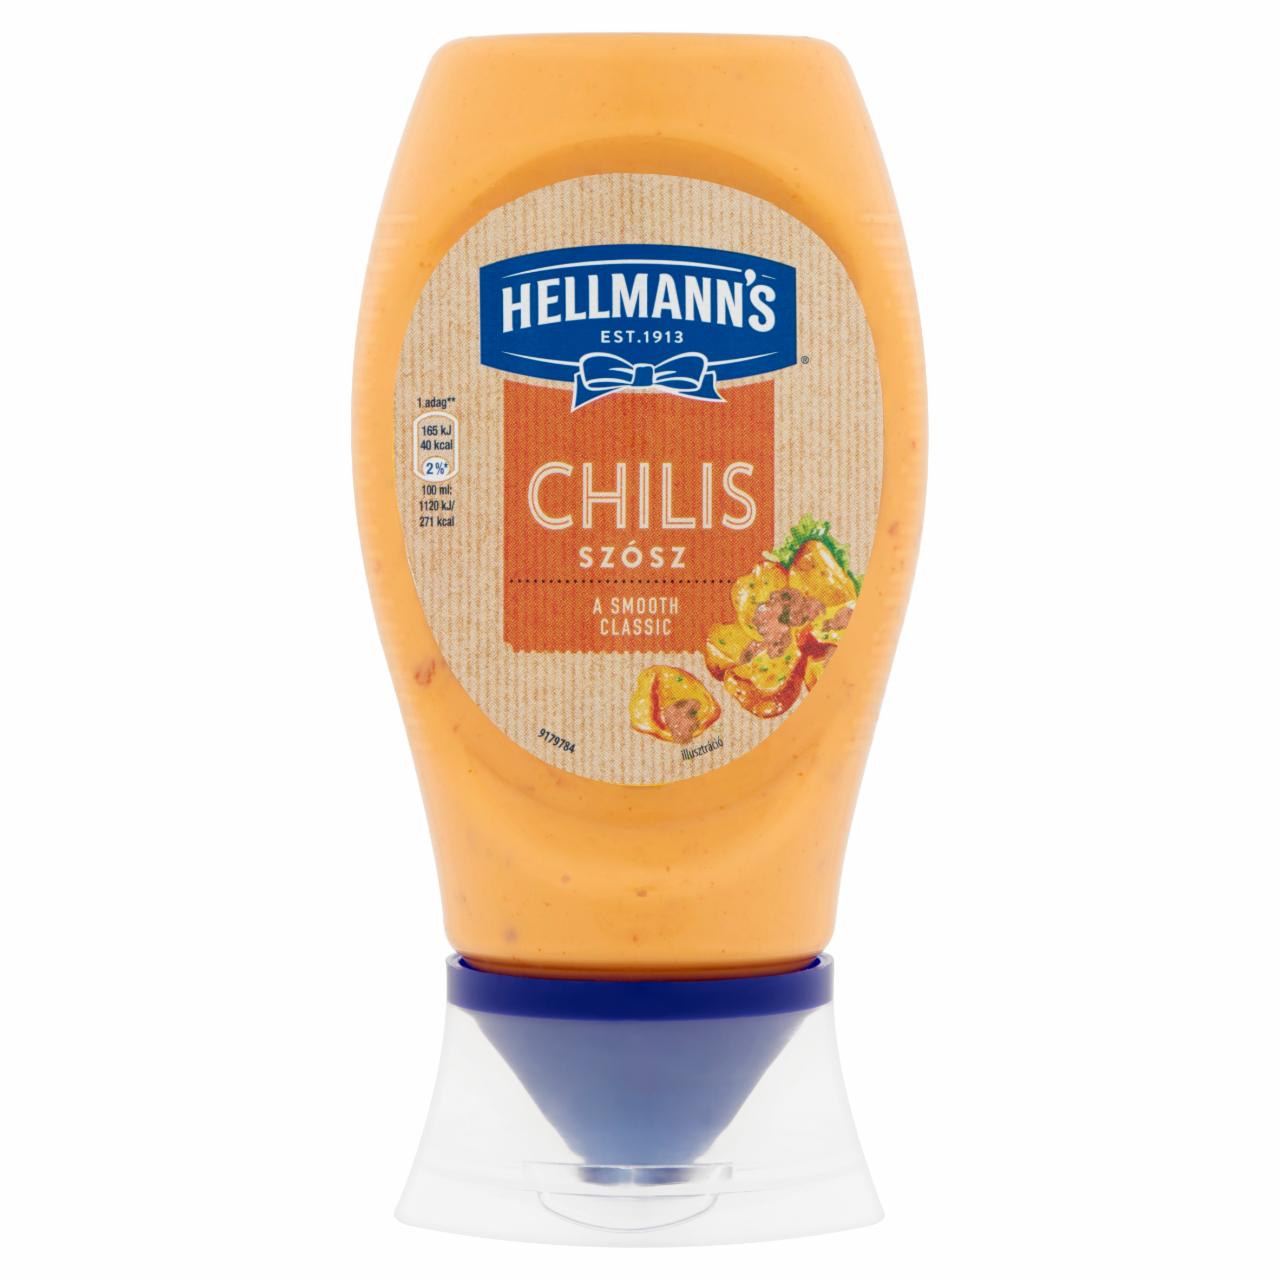 Képek - Hellmann's chilis szósz 250 ml